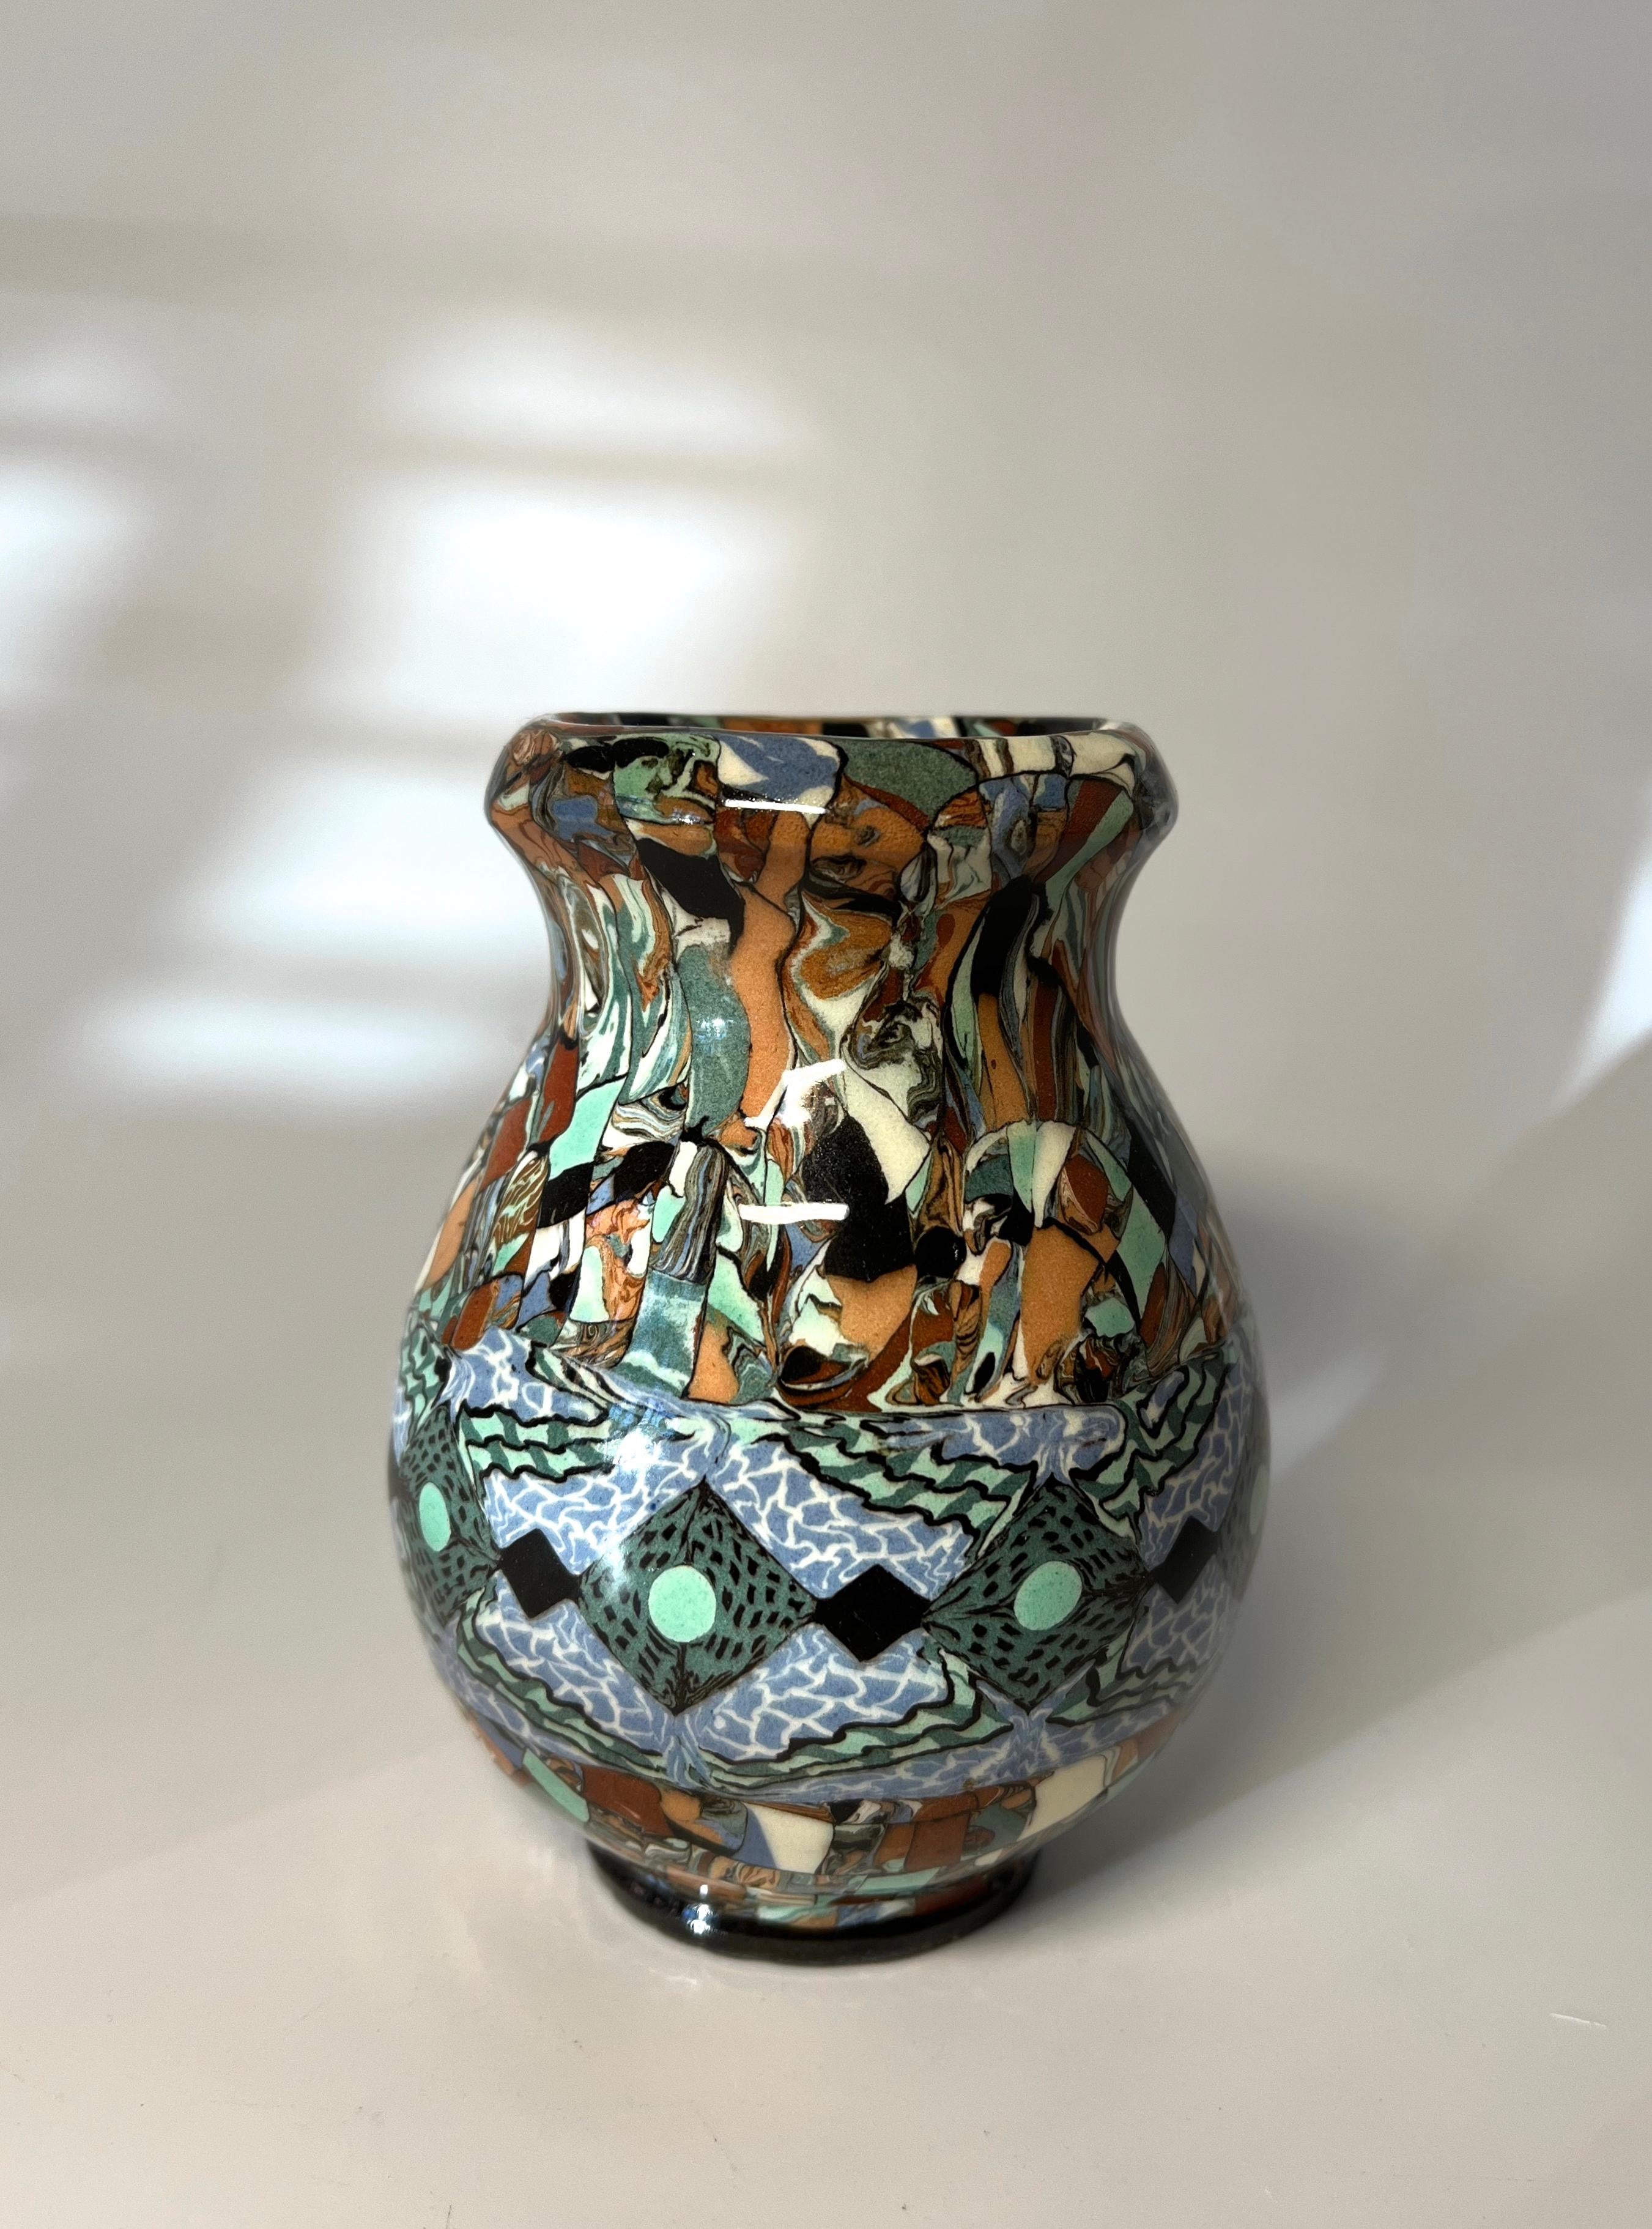 Jean Gerbino für Vallauris, Frankreich, Keramik, glasiertes Mosaik, geformte Vase mit dunkelgrünem und schwarzem Rautenkettenmotiv
In außergewöhnlichem Originalzustand
CIRCA 1960er Jahre
Unterzeichnet Gerbino  zur Basis
Höhe 4,5 Zoll, Durchmesser